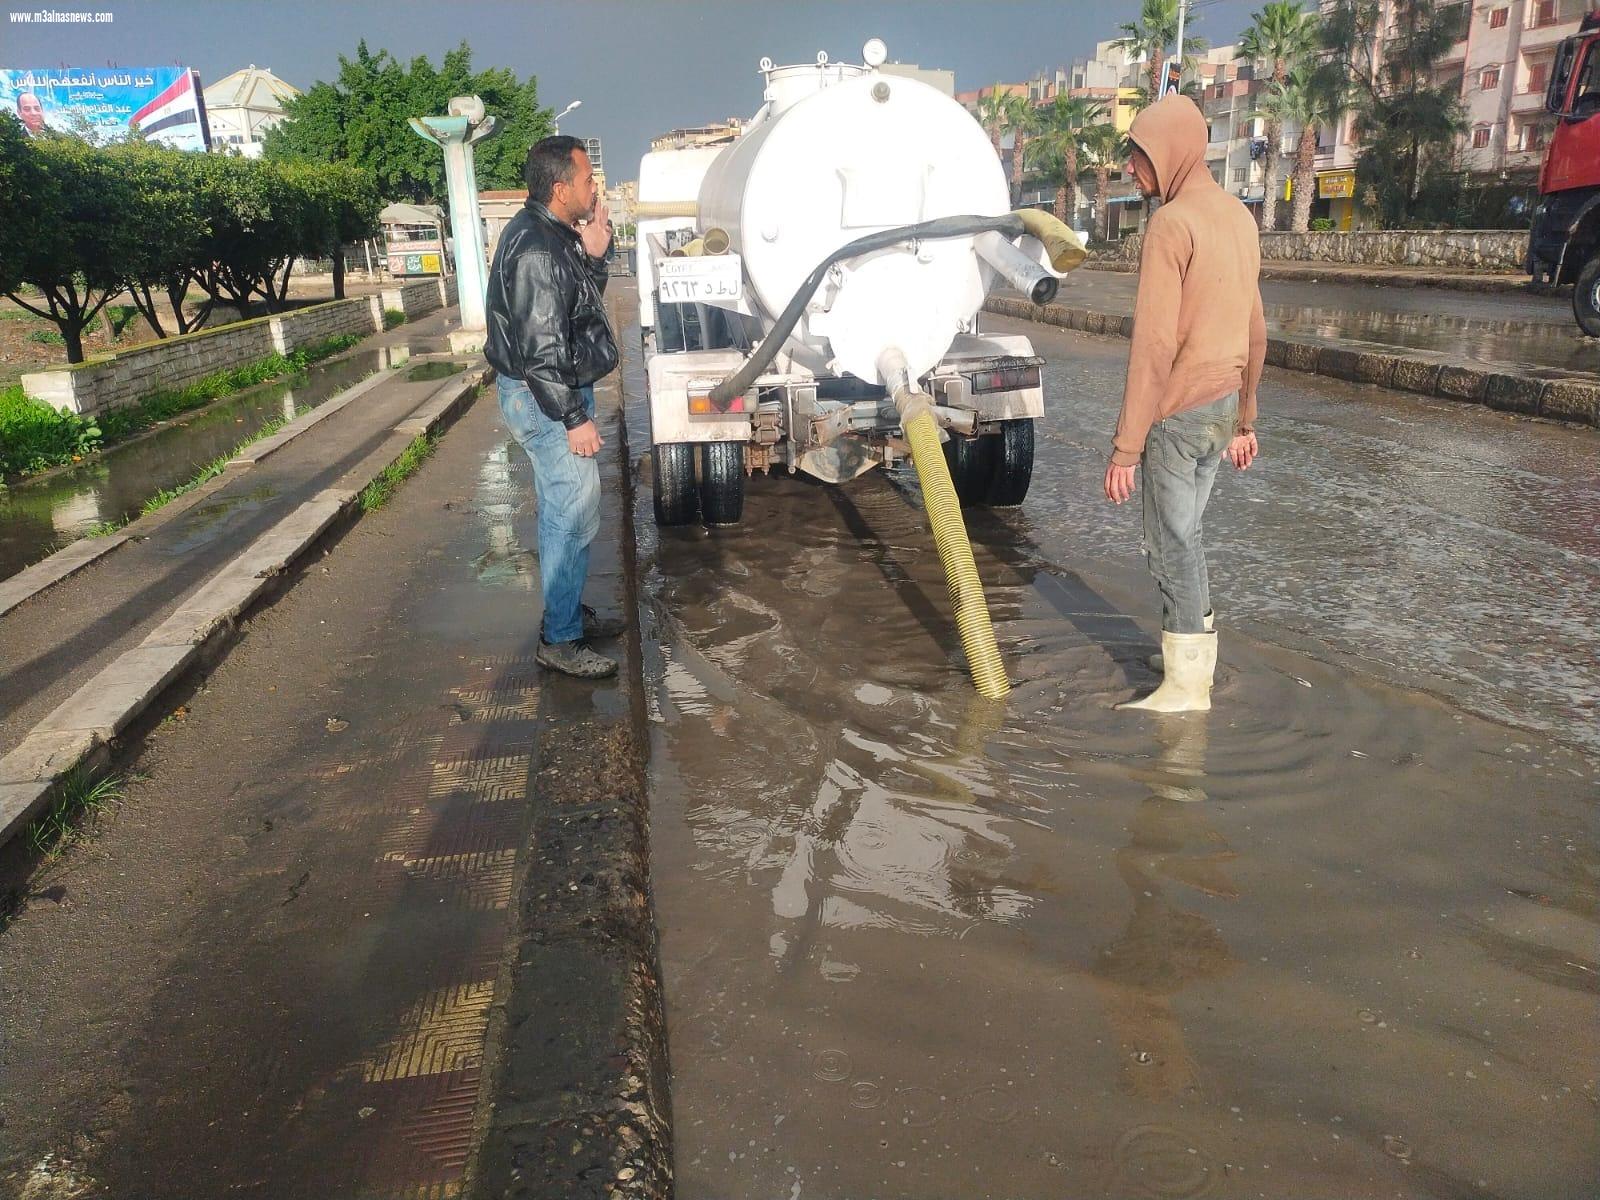  استمرار رفع حالة الطوارئ بكفر الشيخ ورفع مياه الأمطار بمدن وقرى المحافظة